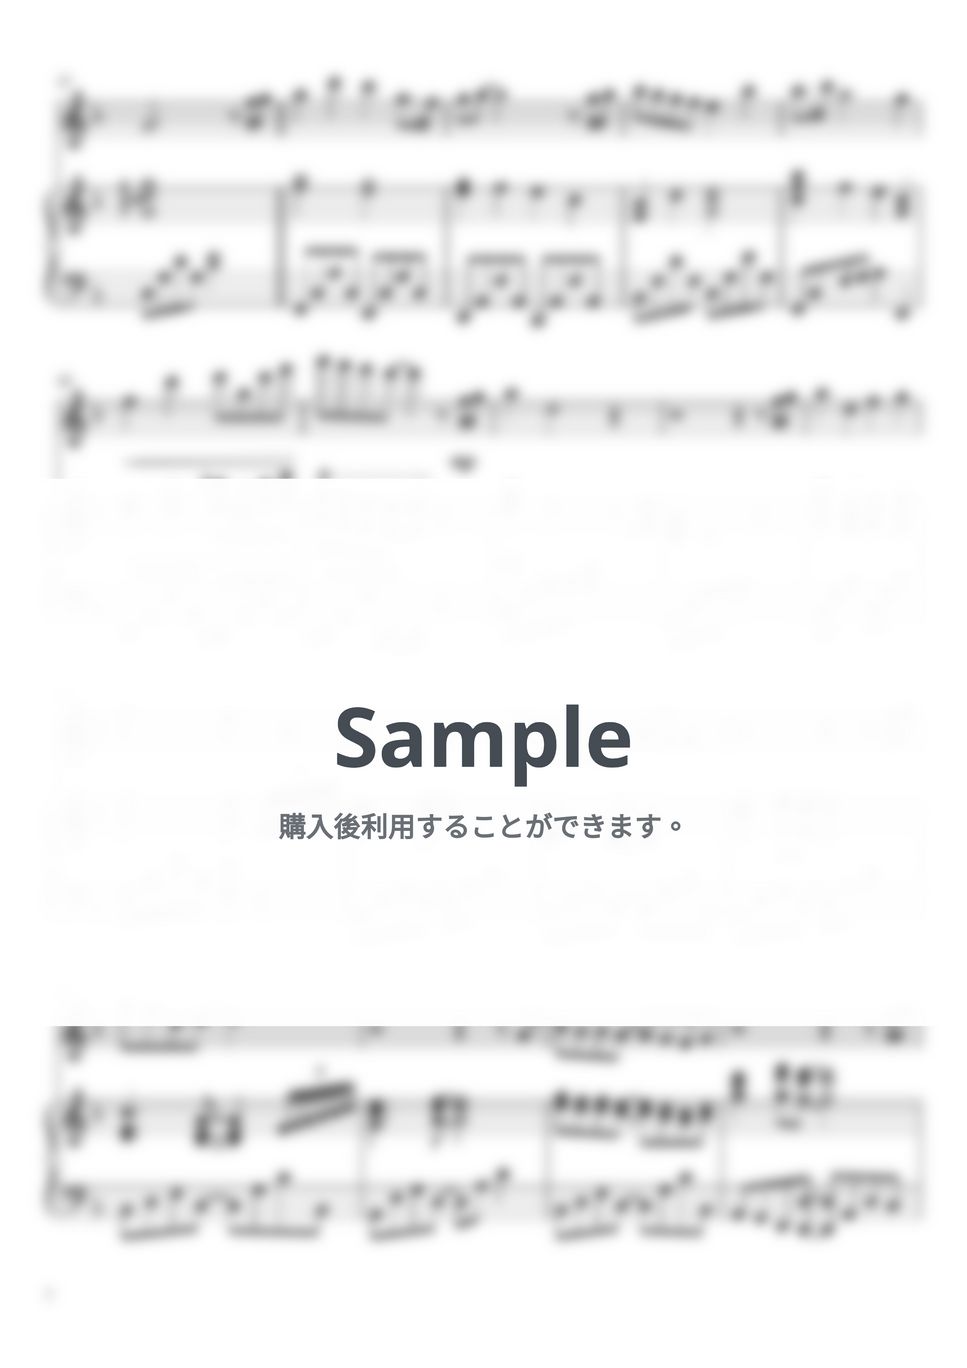 高見 優 - JIN - 仁 - Main Title (フルート＆ピアノ伴奏) by PiaFlu